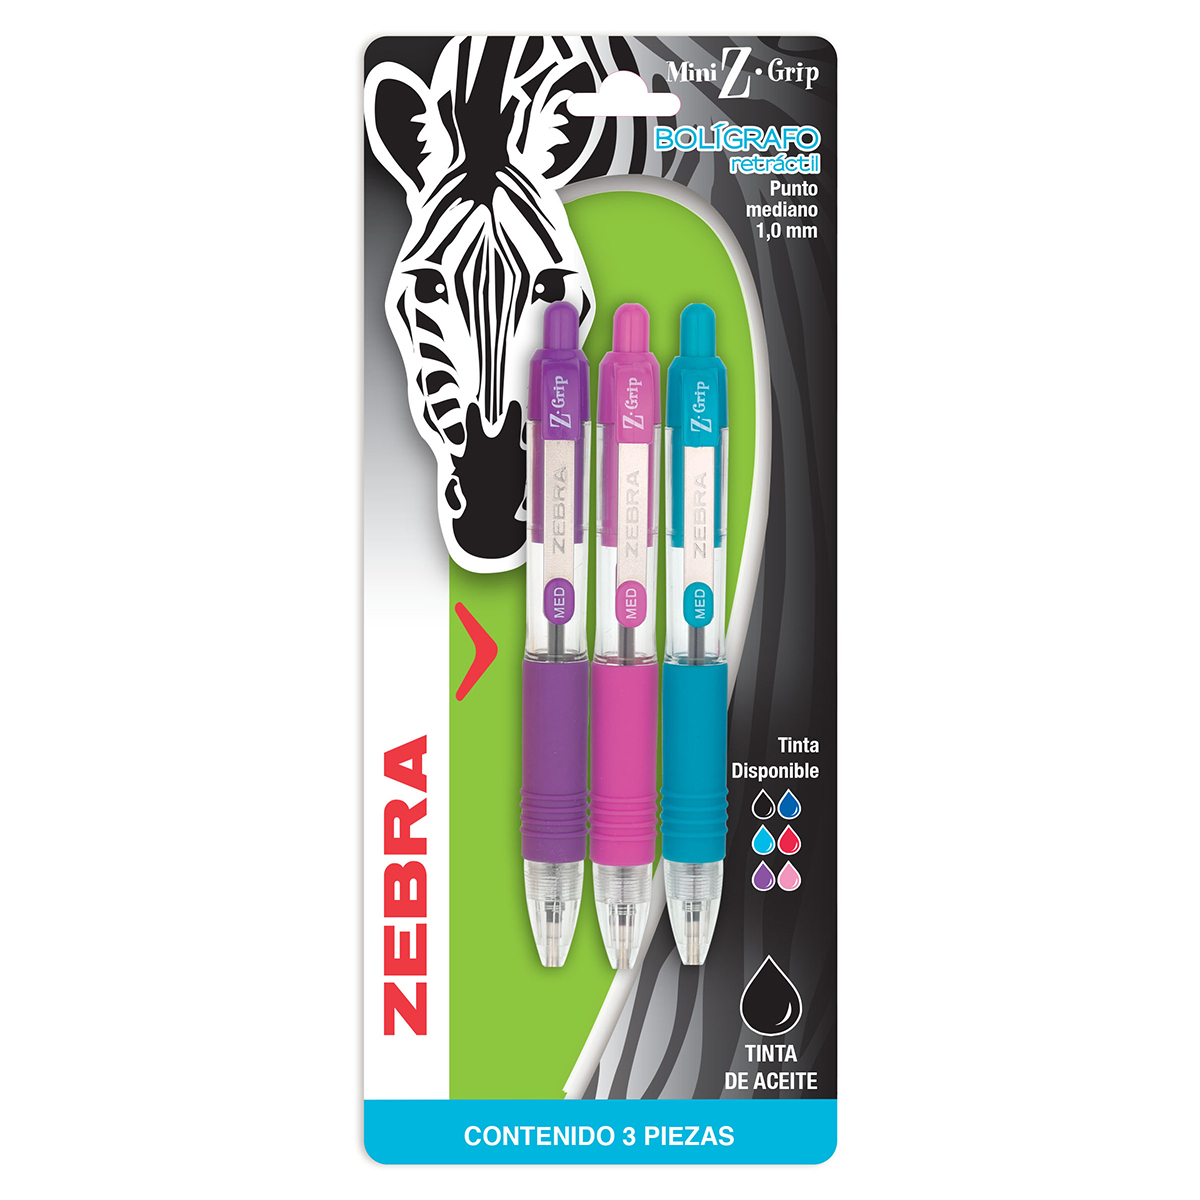 Plumas Retráctiles Zebra Mini Z Grip Fashion / Punto mediano / Tinta negra / 3 piezas